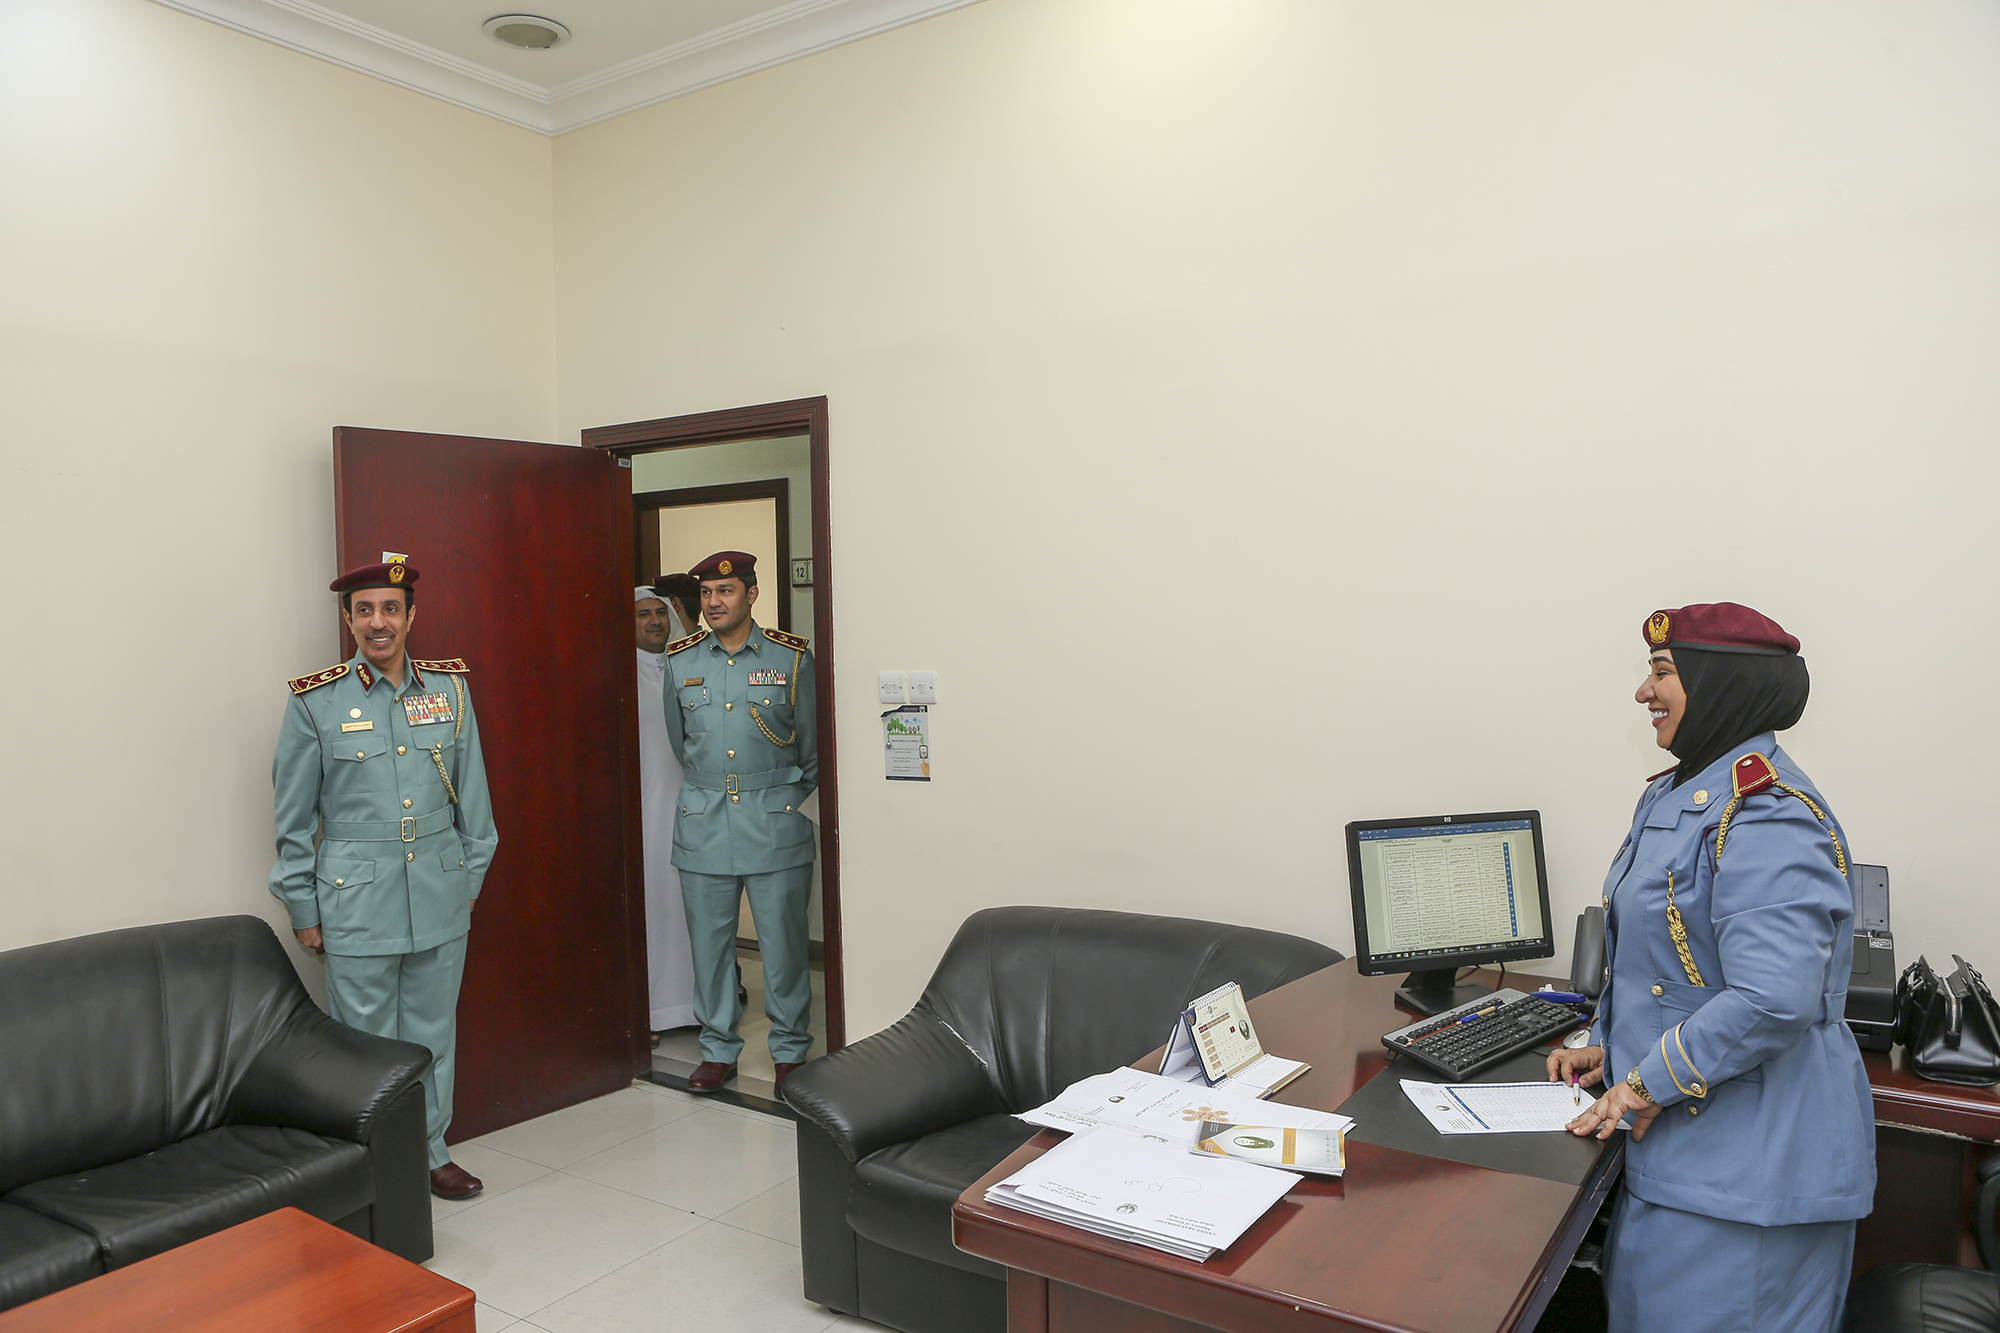 ‫قائد عام شرطة عجمان يتفقد إدارة الاستراتيجية وتطوير الأداء‬